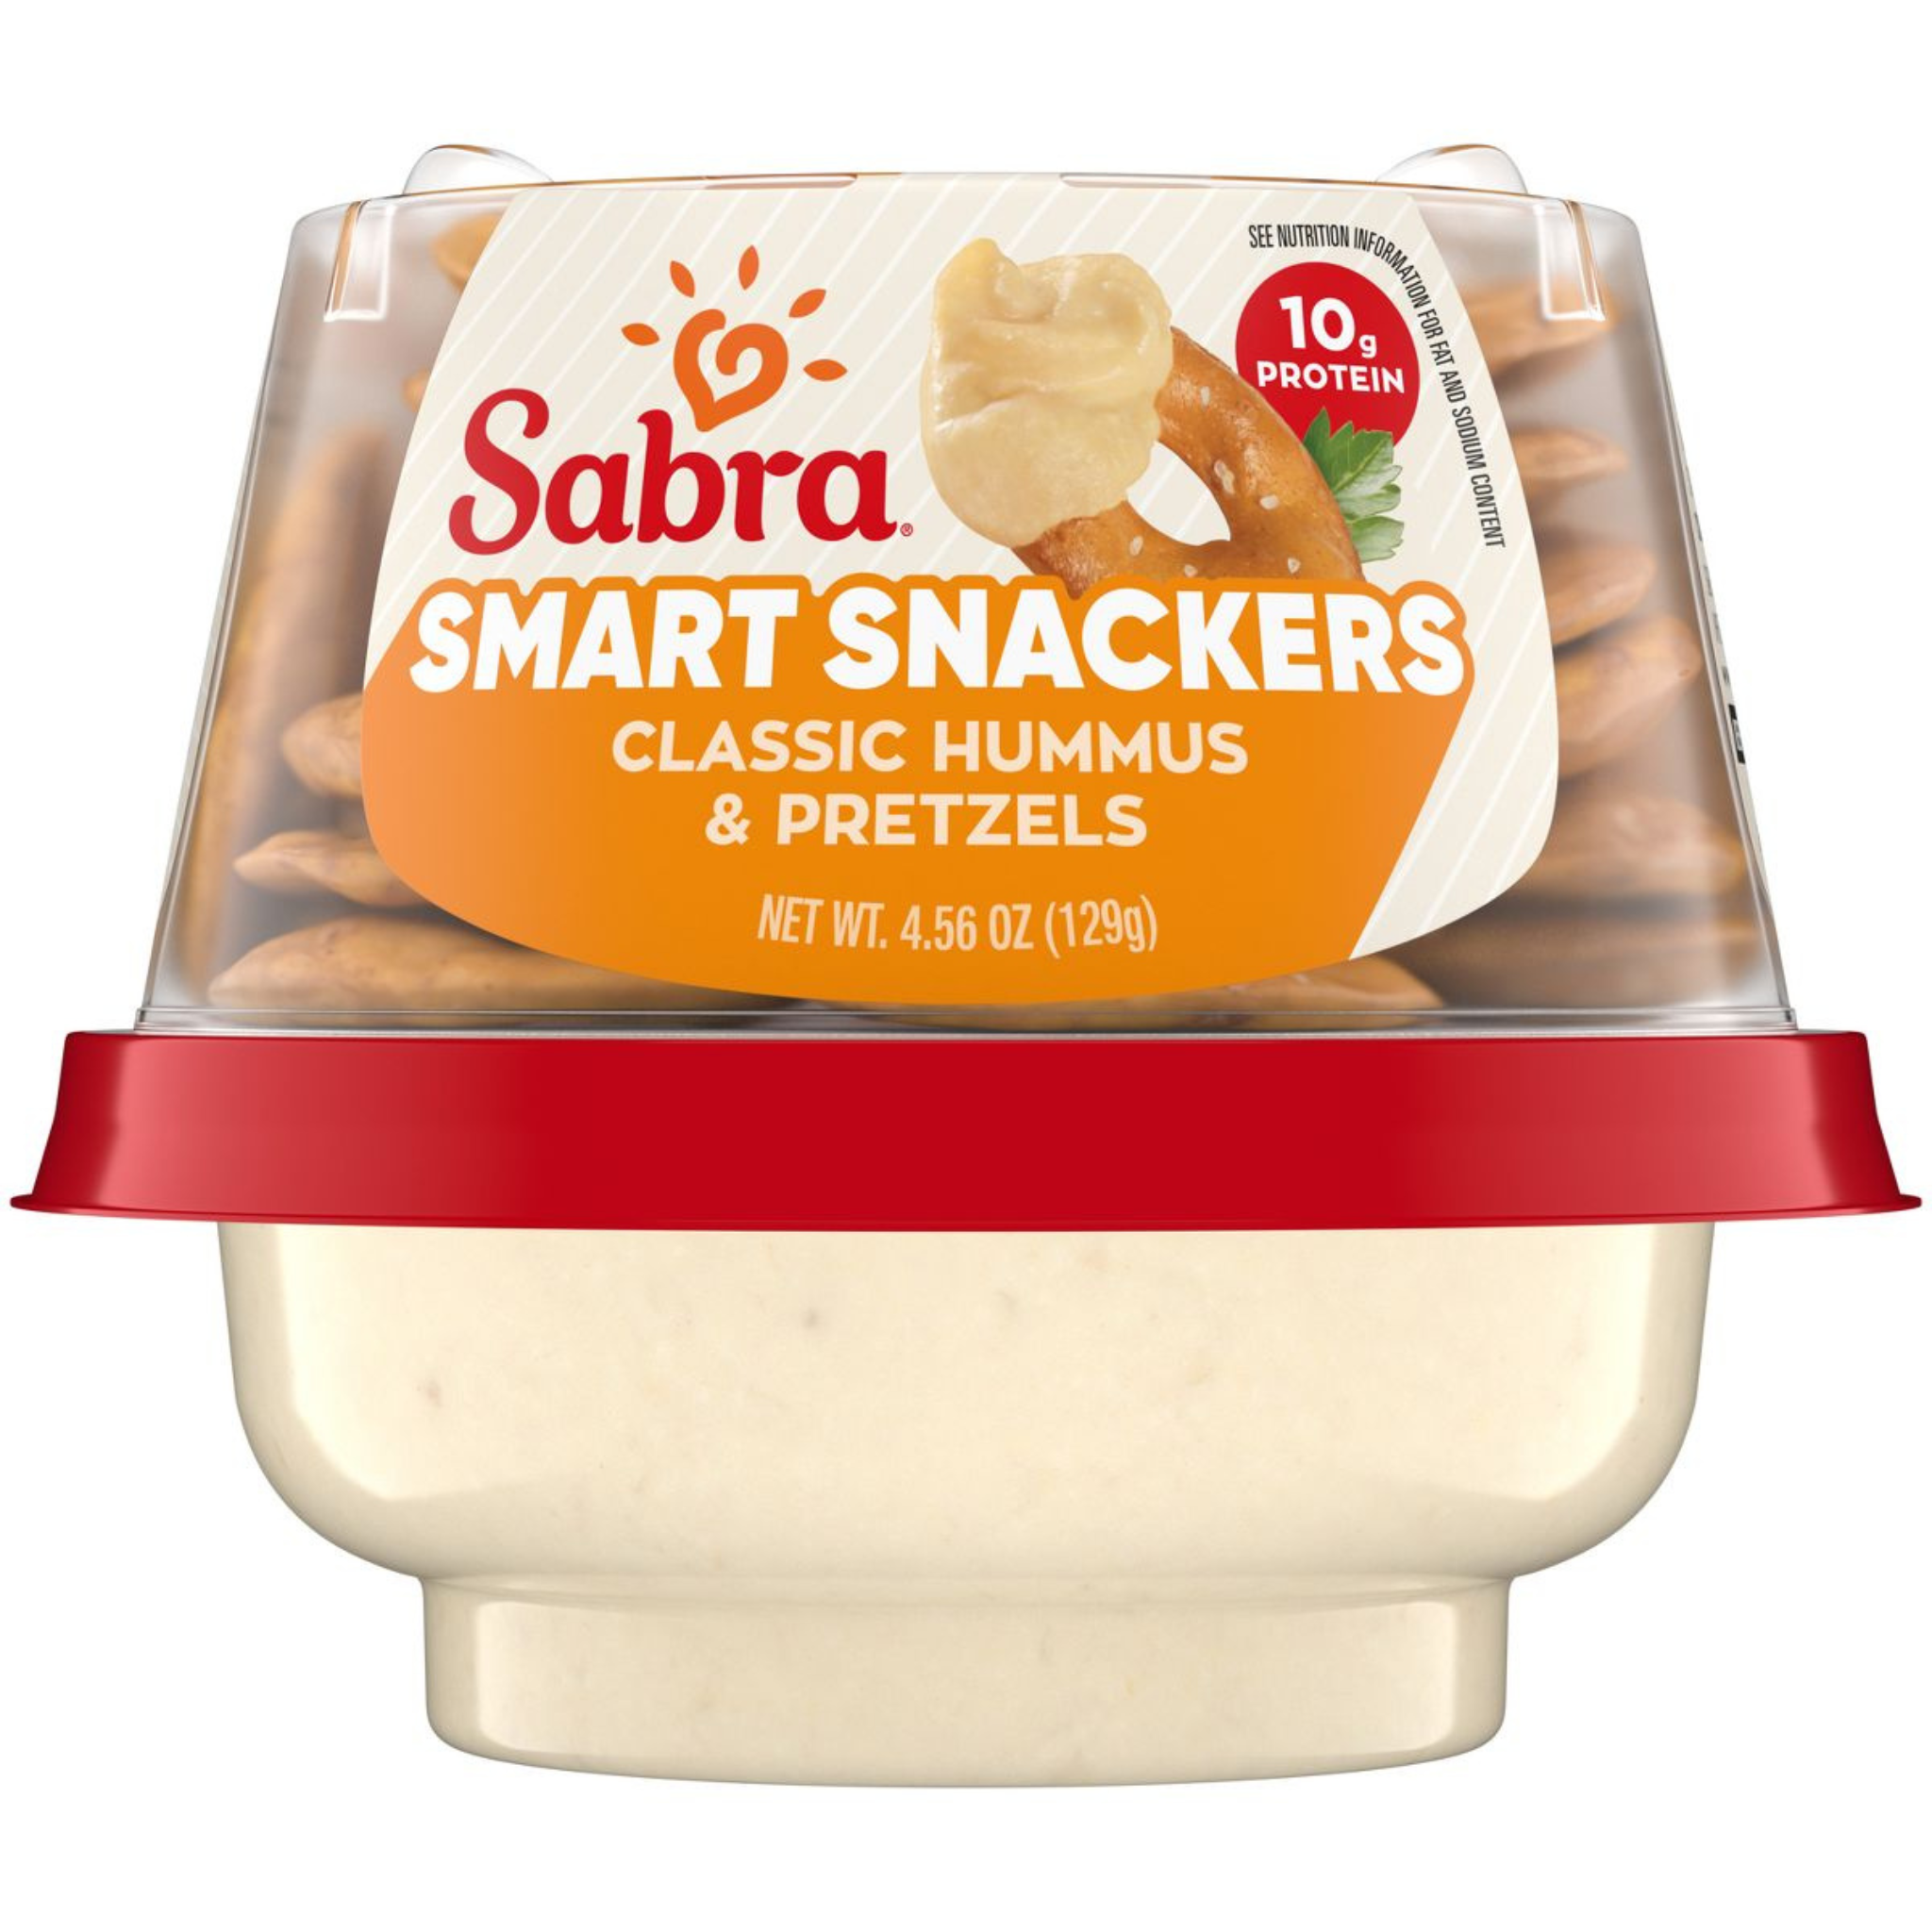 Sabra Hummus and Pretzels Cup